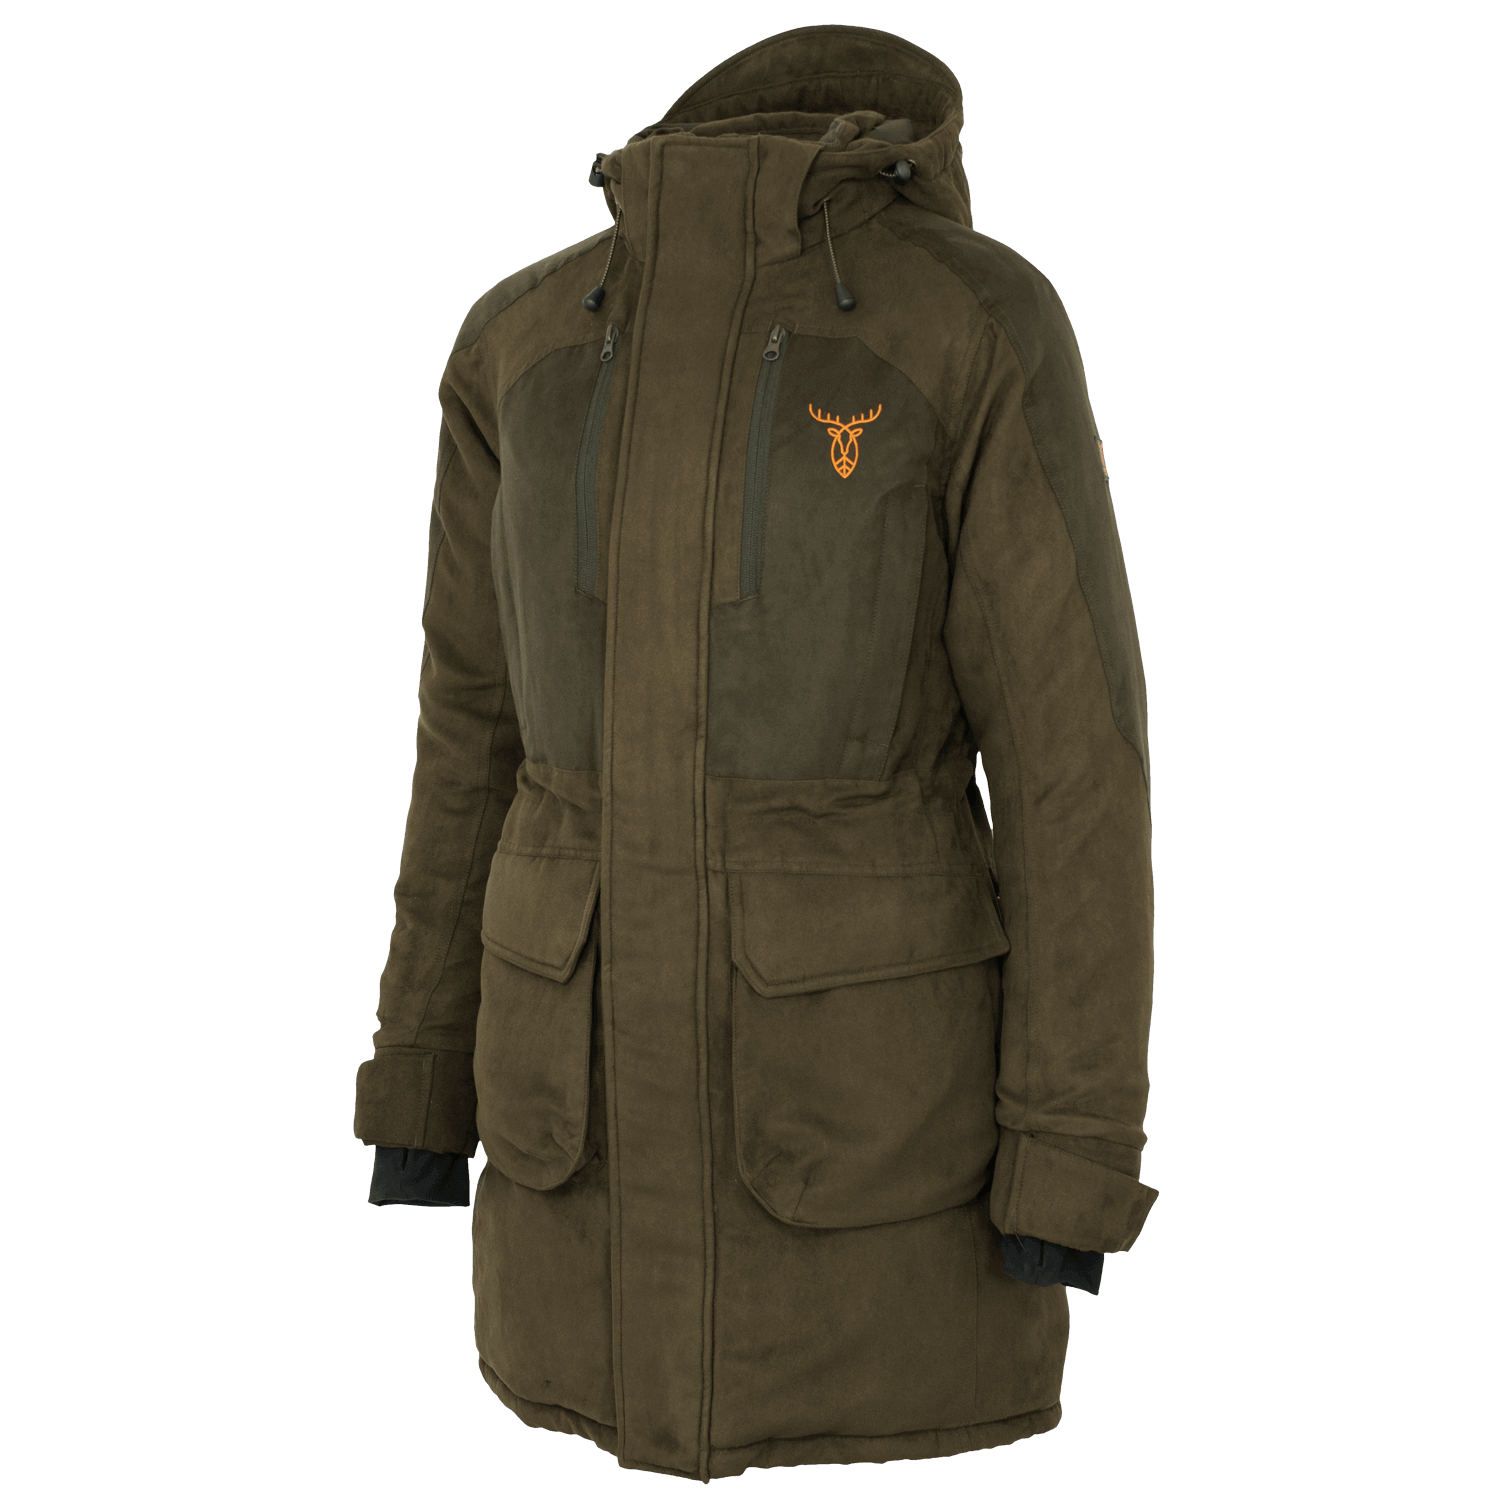 Pirscher Gear Polar Ladies Winter Jacket - Winter Hunting Clothing